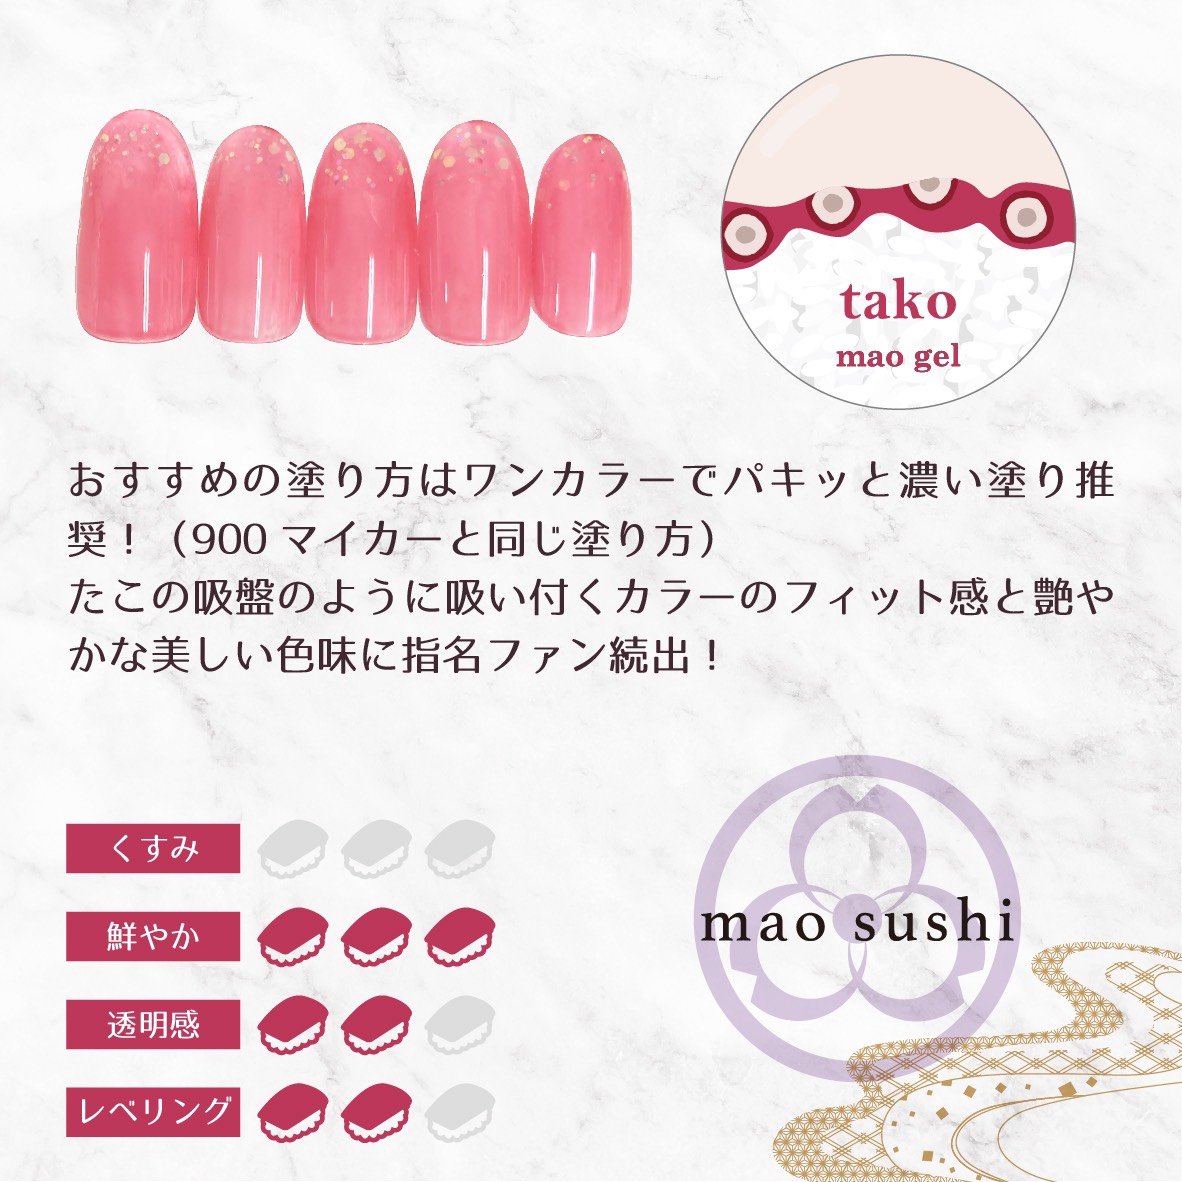 mao sushi ｜mao nail｜Beauty Nail Brand